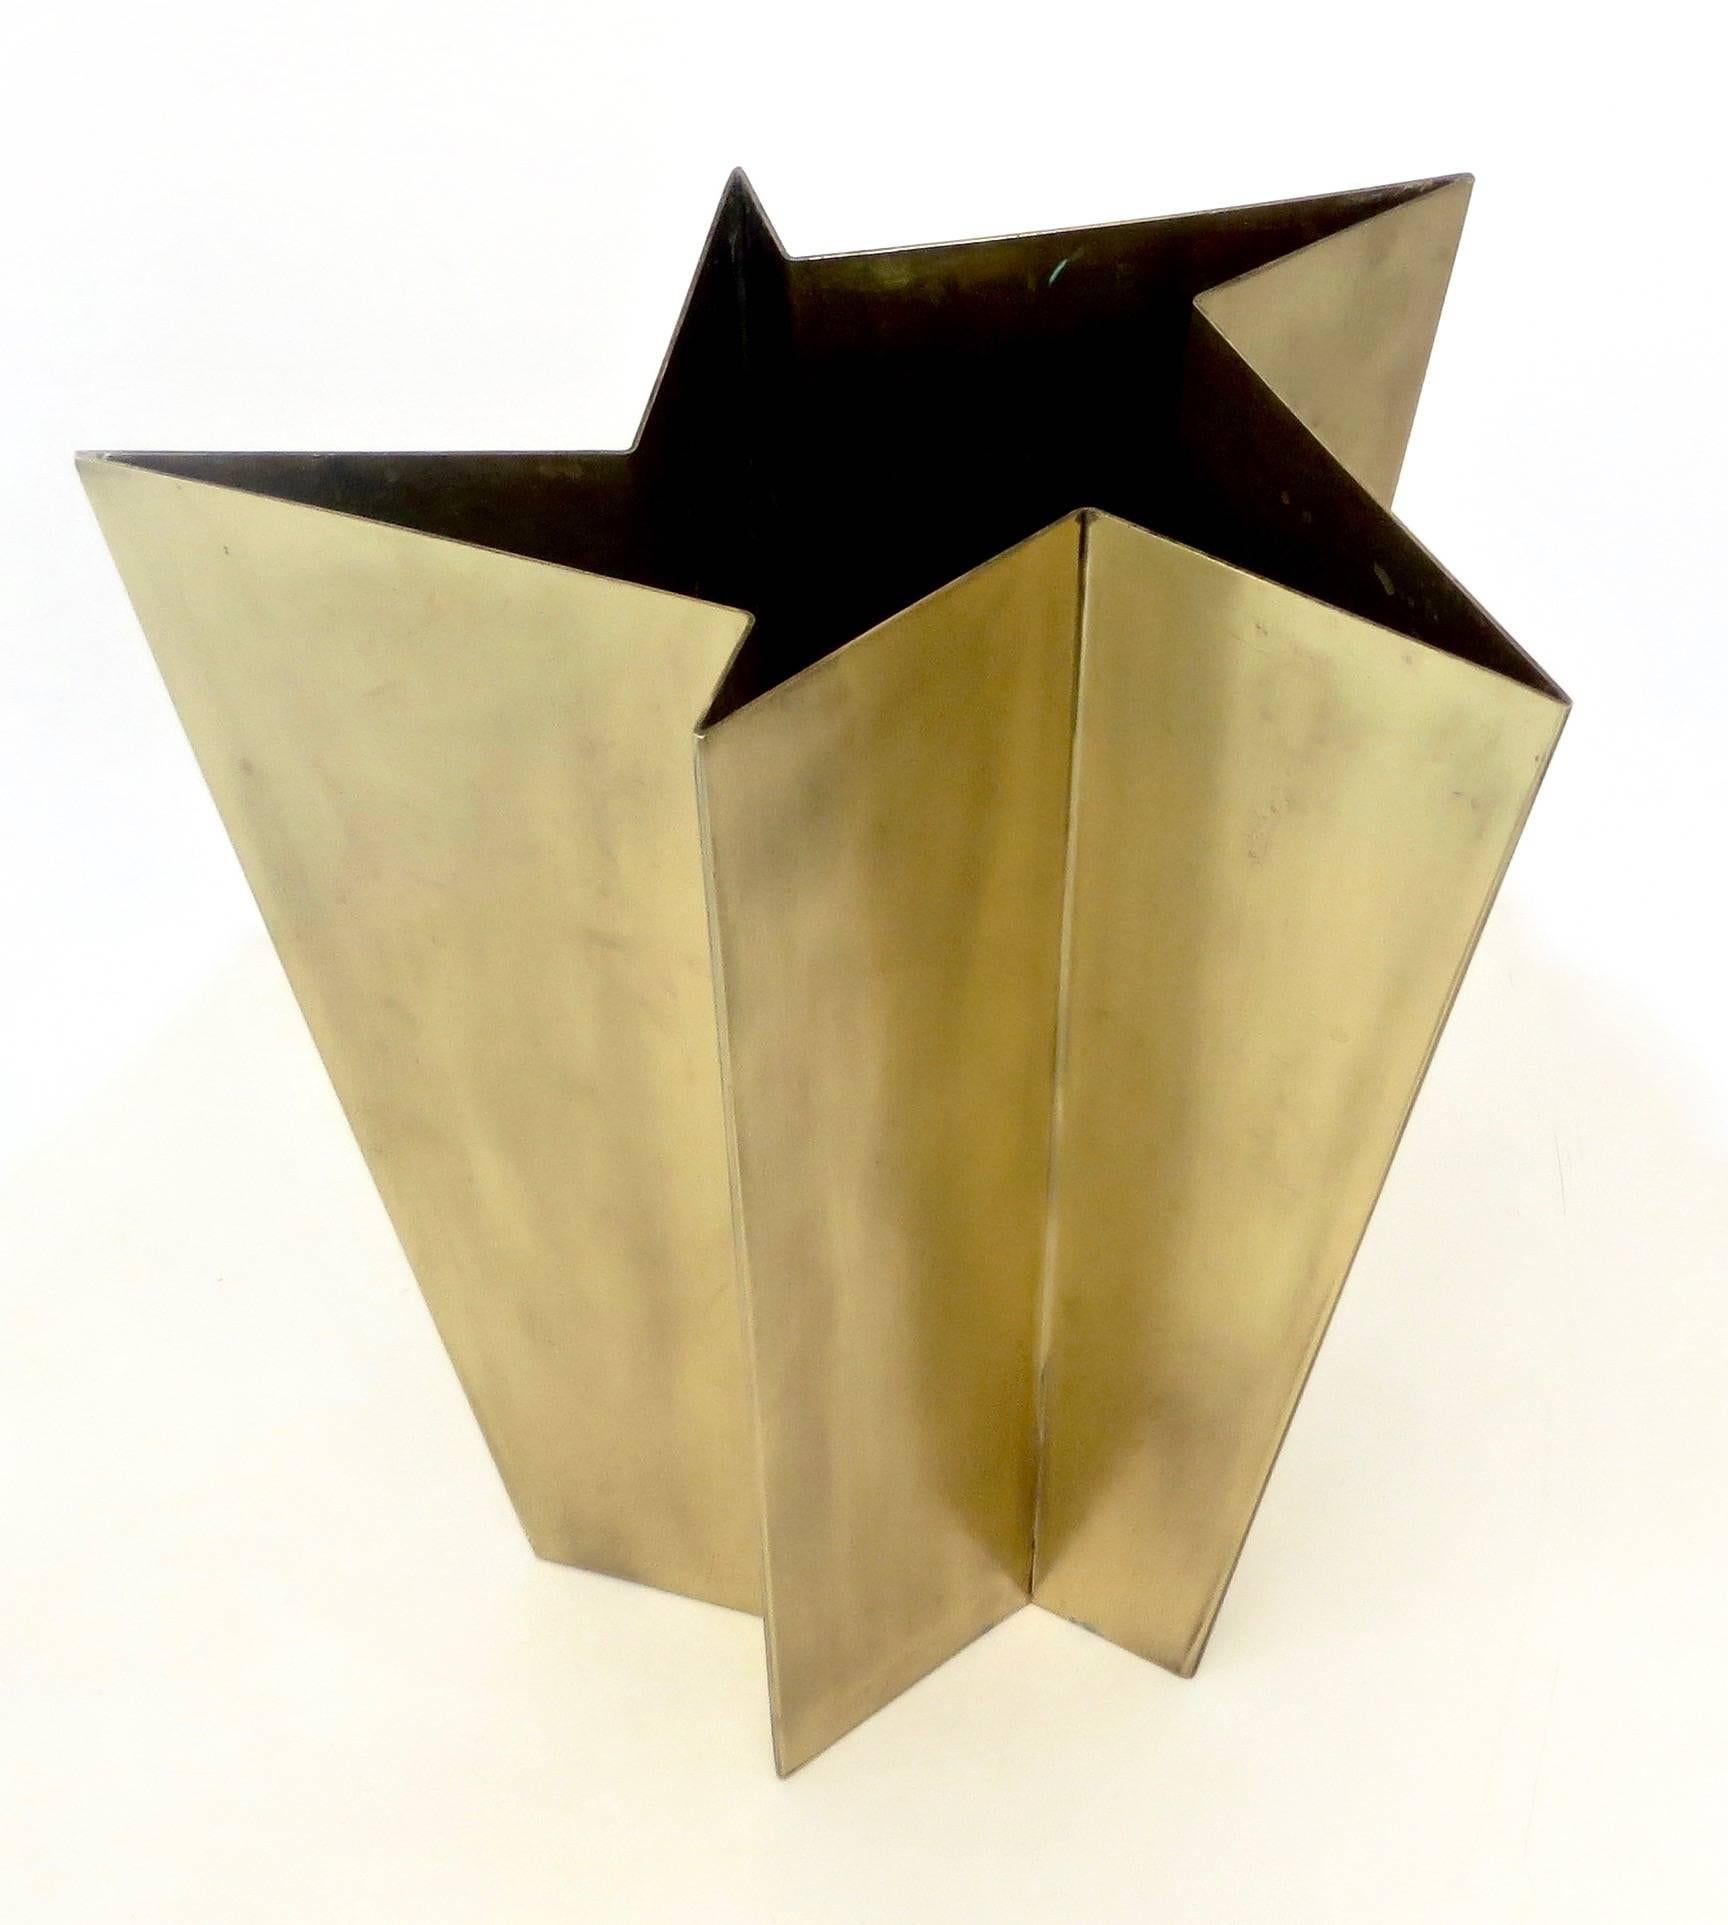 Contemporary Italian Star Form Brass Vase by Tommaso Salocchi, Studio Salocchi